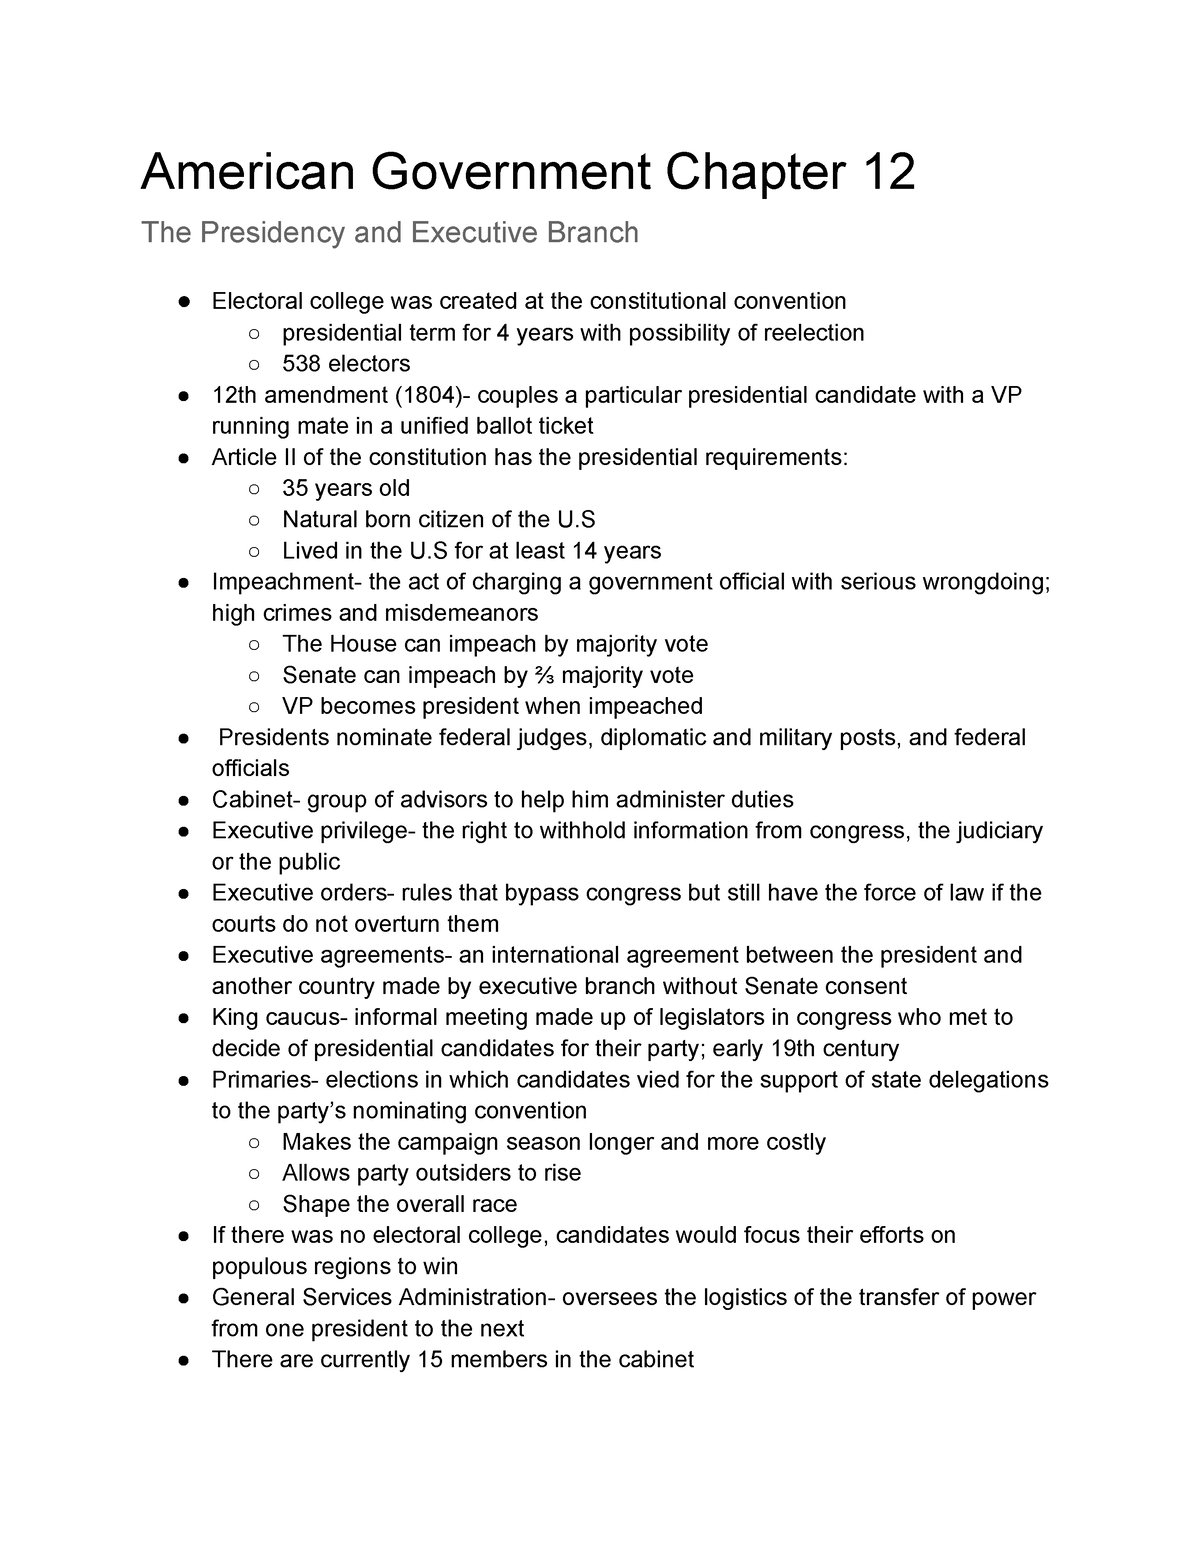 American Government: Twelfth Amendment (1804)